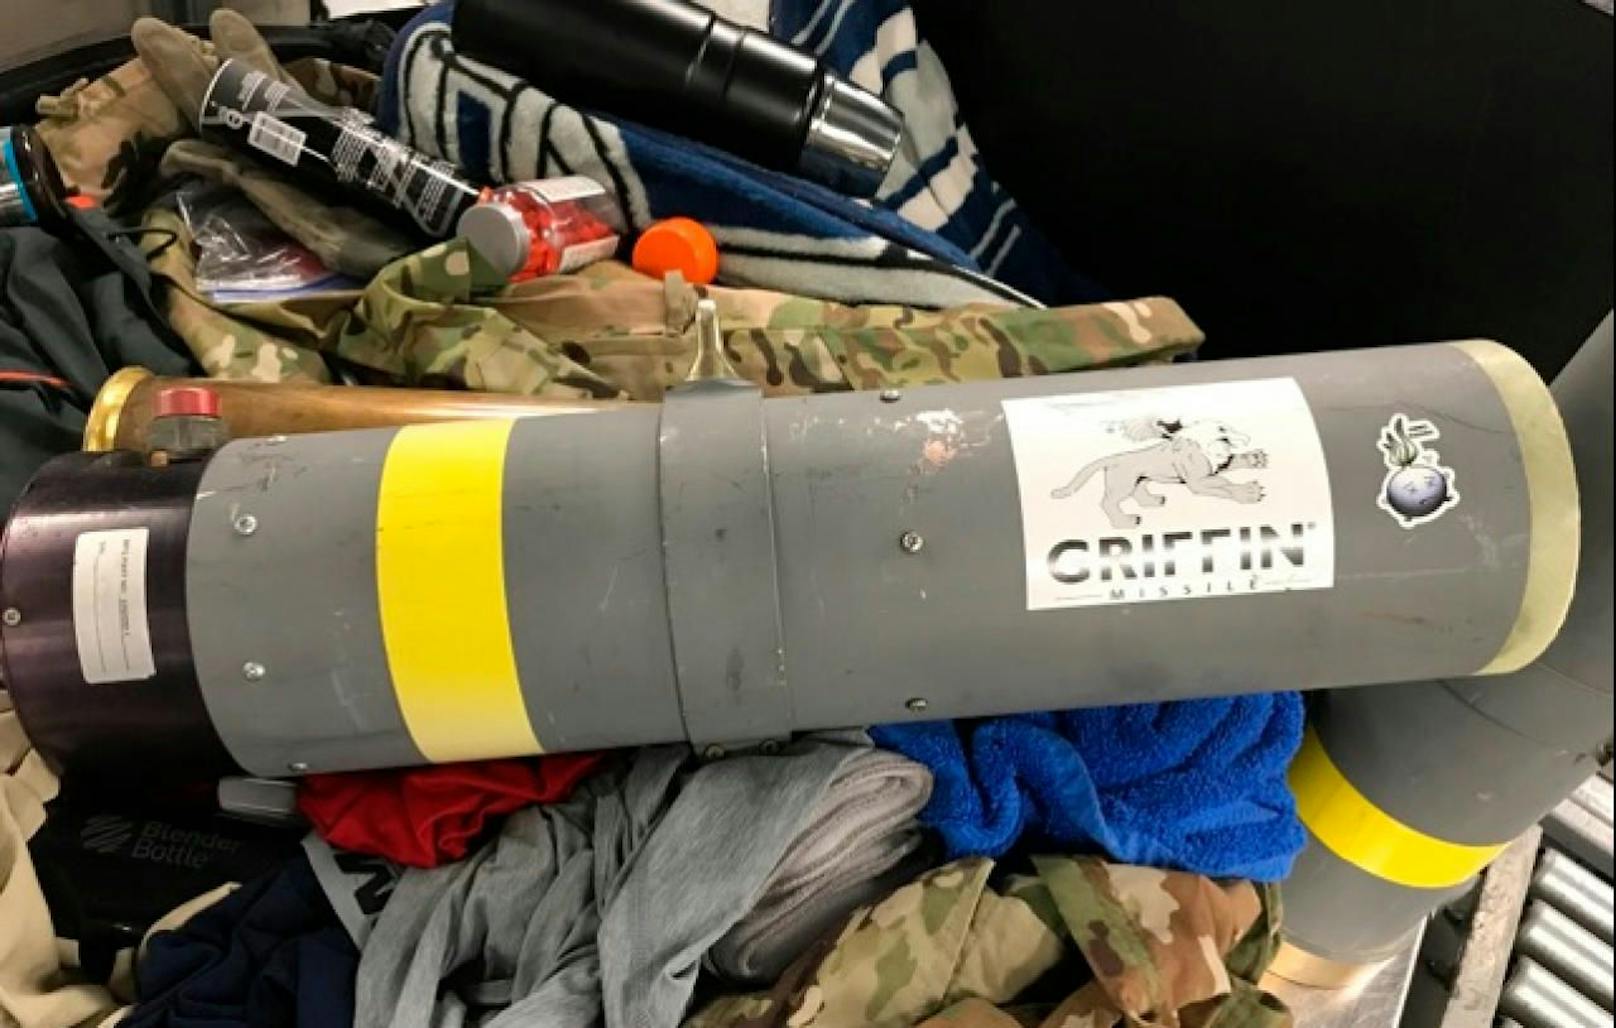 Dieser Raketenwerfer wurde im Gepäck des Texaners gefunden.